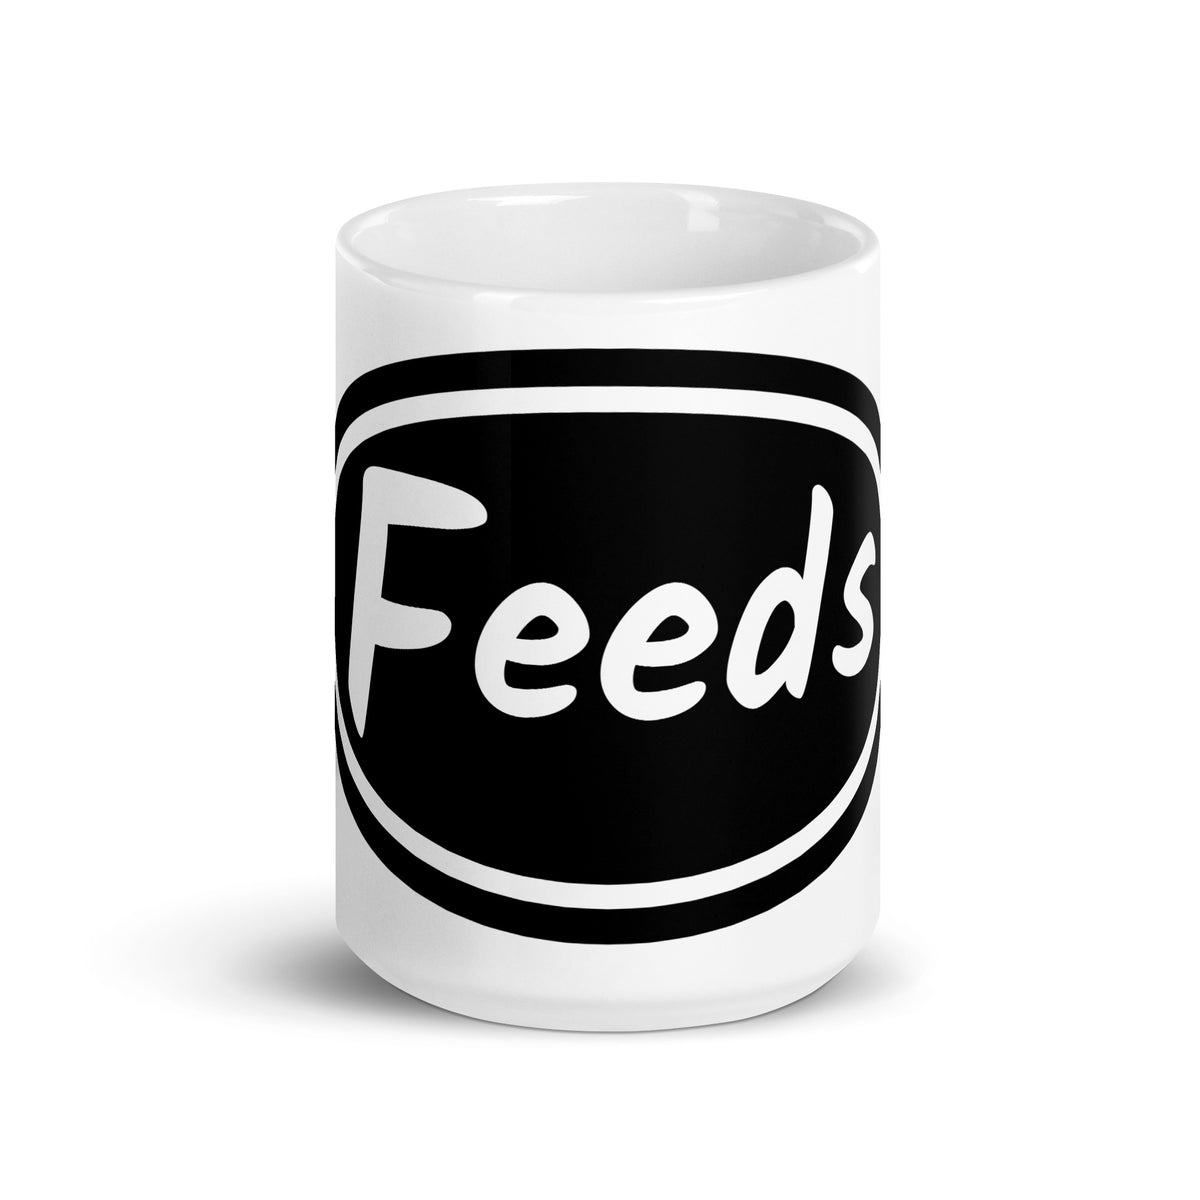 Feeds Mug - mug - Twisted Jezebel